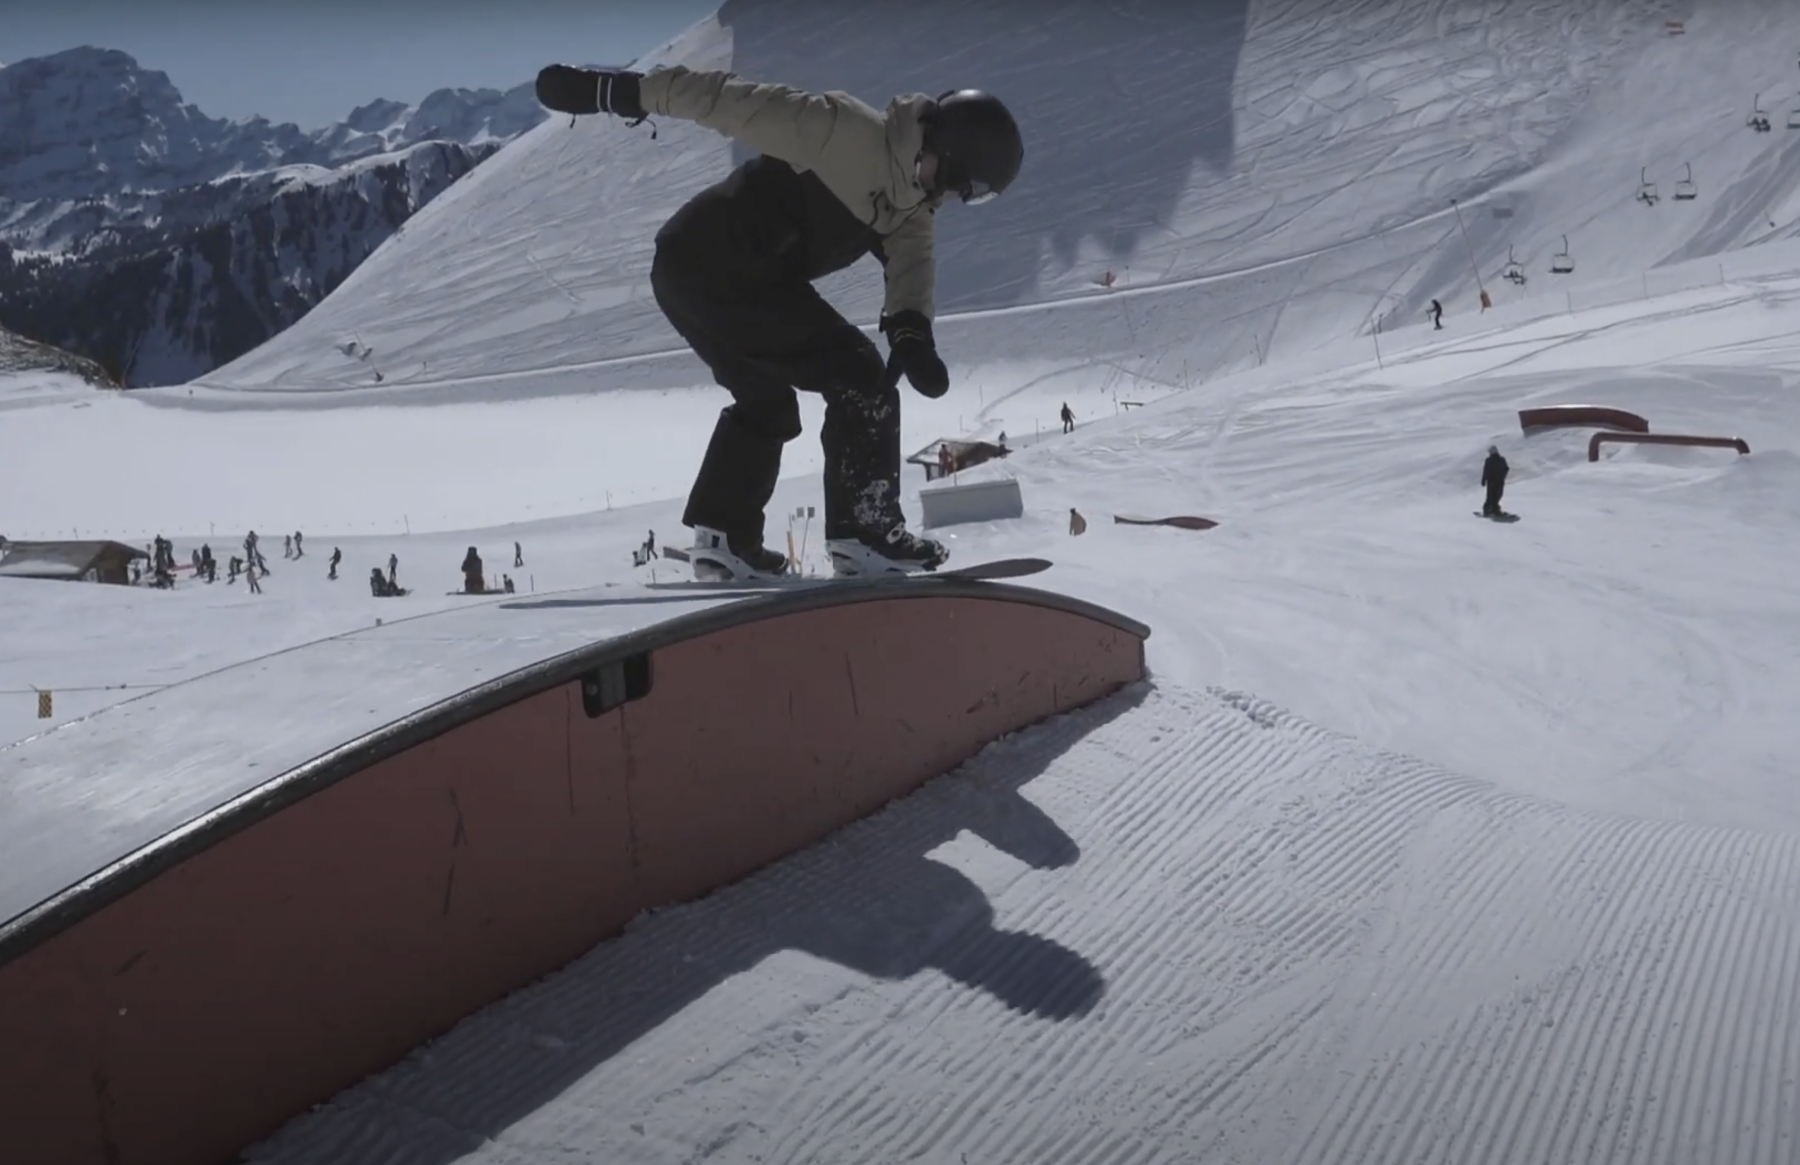 Comment faire un boardslide en snowboard ?